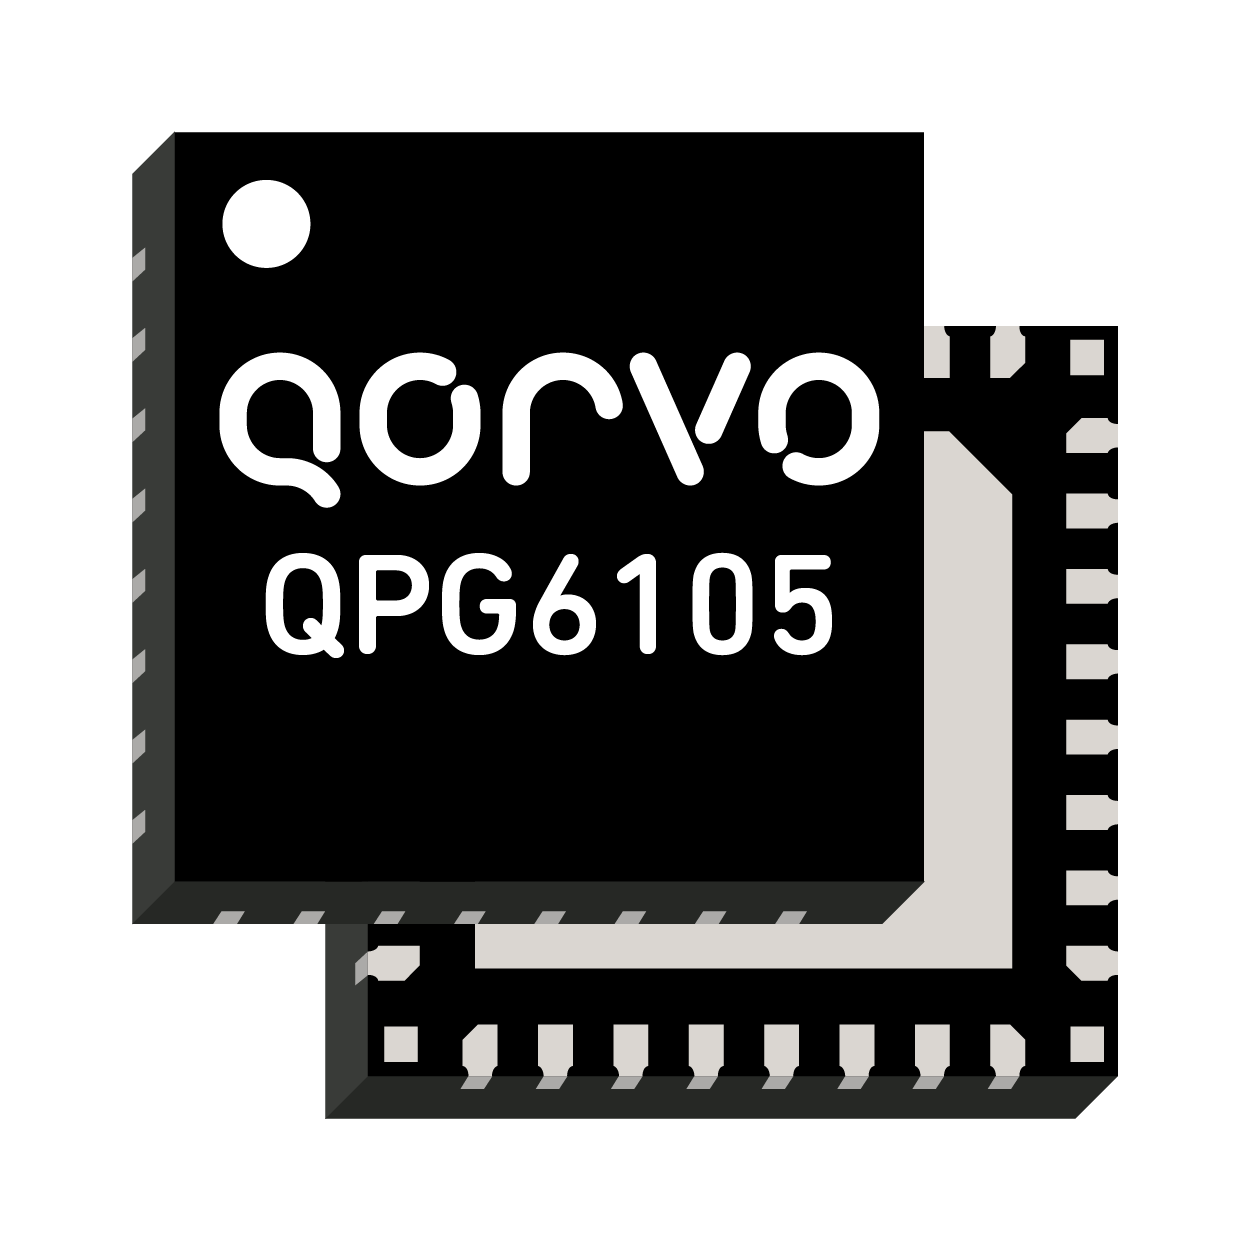 QPG6105 de Qorvo